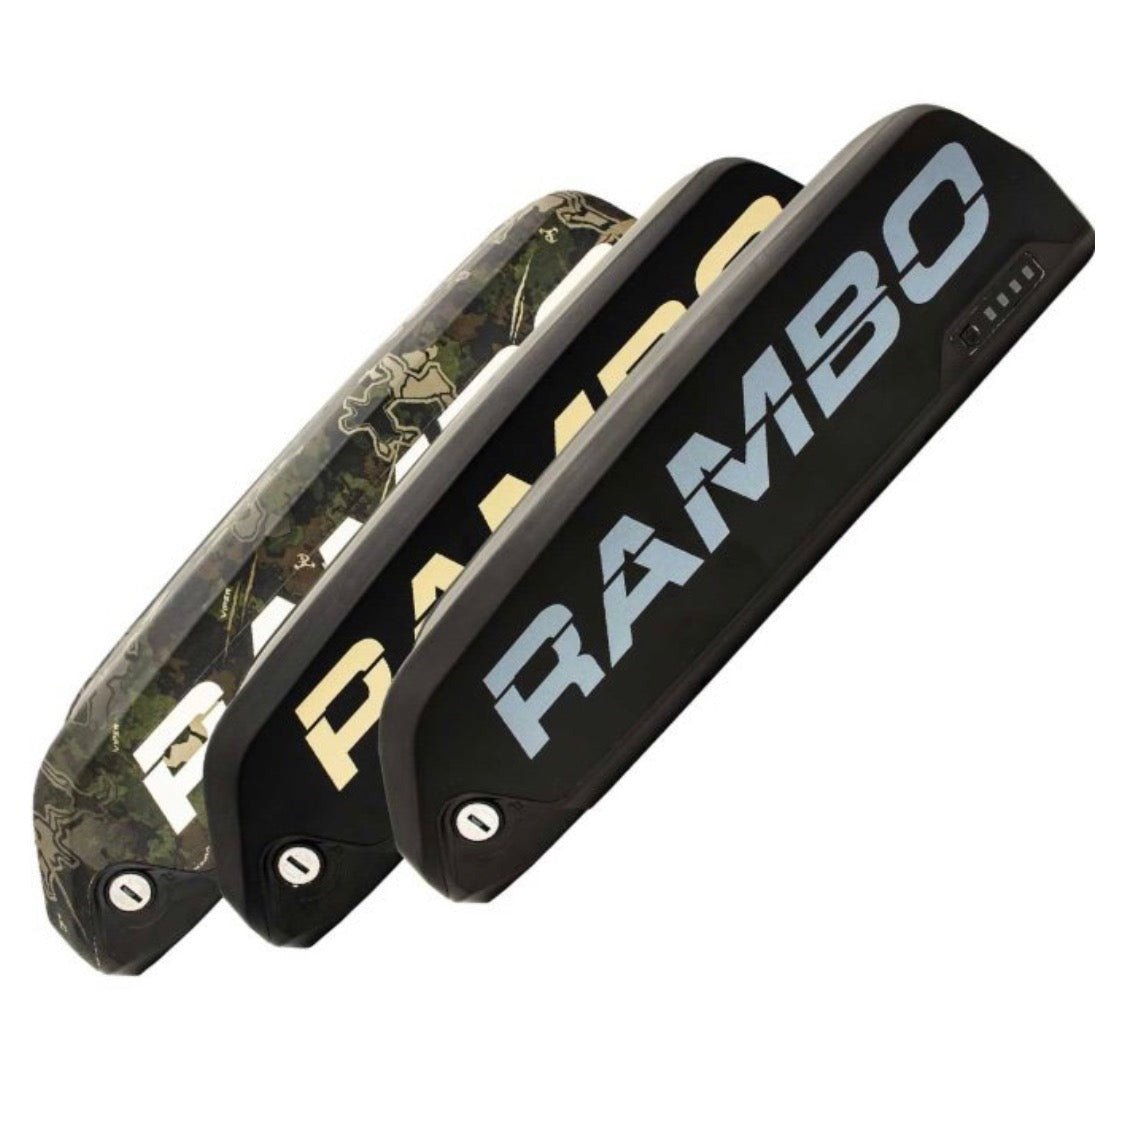 RAMBO RAMBO| 14AH TrueTimber Viper Woodland Camo,Blk/Grey &Blk/Tan Battery - eBike Haul